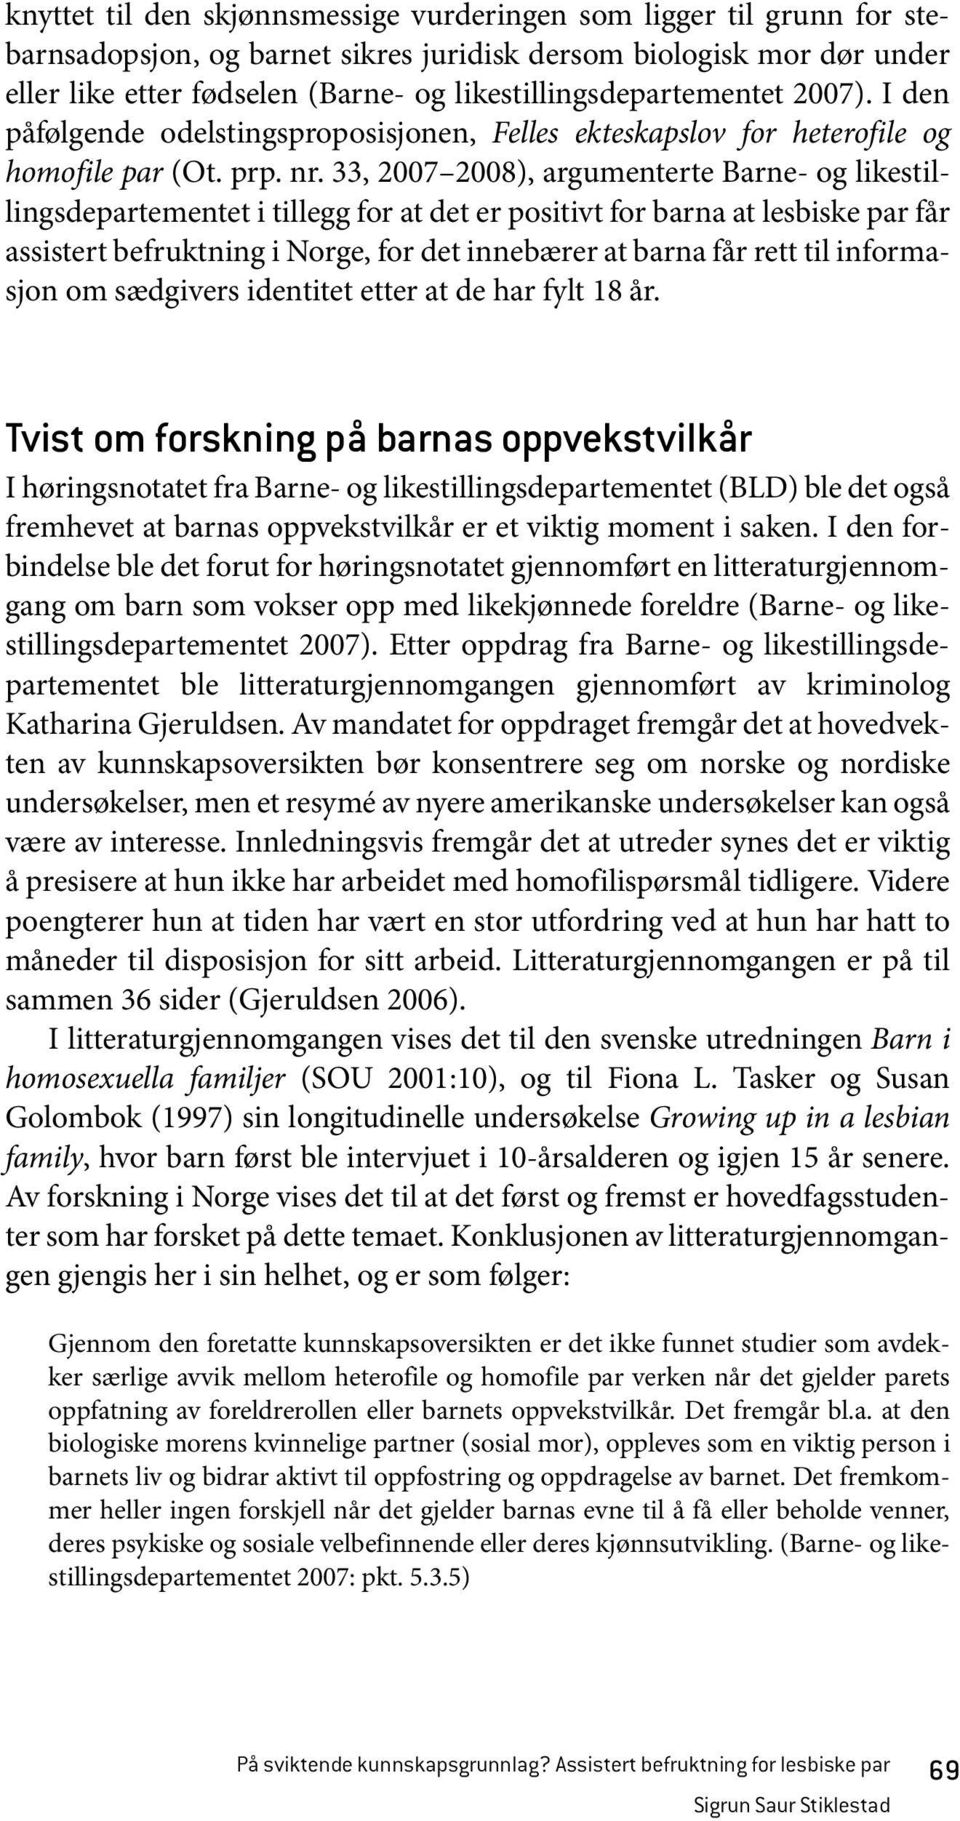 33, 2007 2008), argumenterte Barne- og likestillingsdepartementet i tillegg for at det er positivt for barna at lesbiske par får assistert befruktning i Norge, for det innebærer at barna får rett til